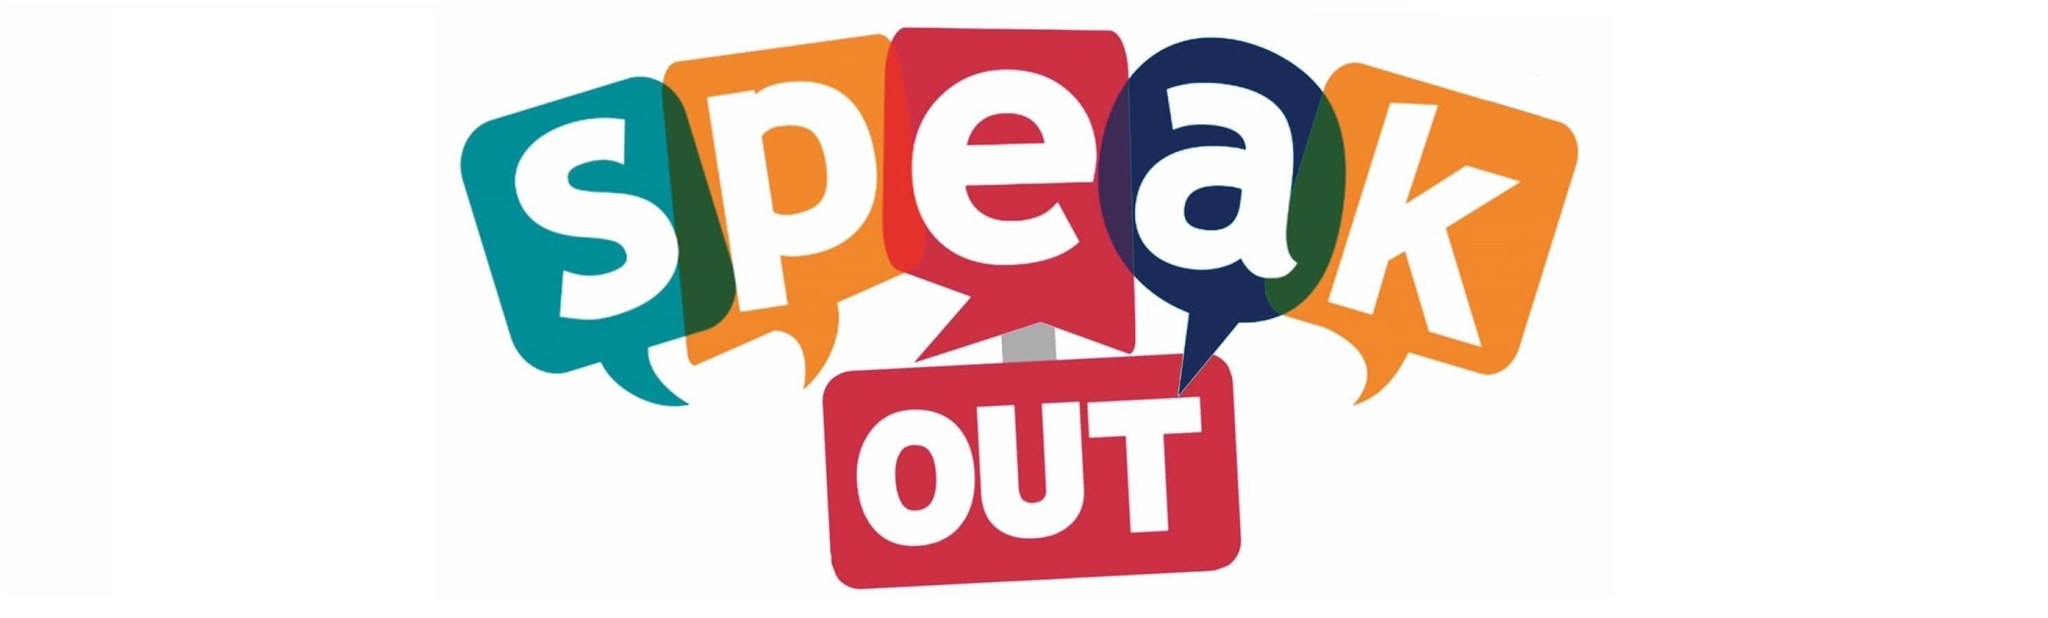 Logo saying "Speak Out"